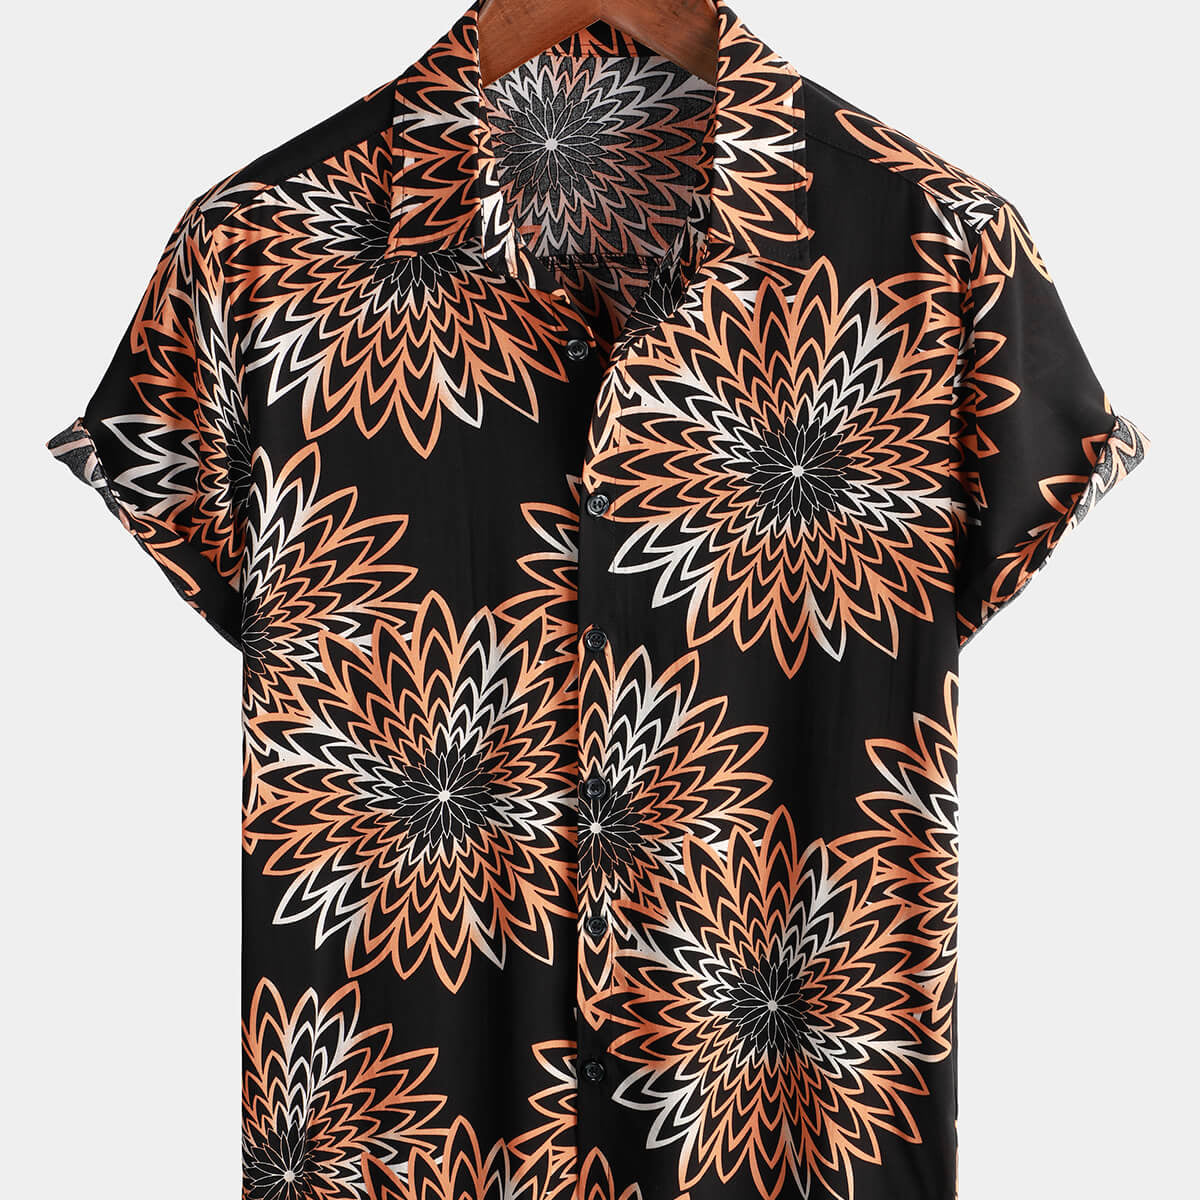 Chemise hawaïenne à manches courtes pour hommes, motif floral, pour la plage, l'été